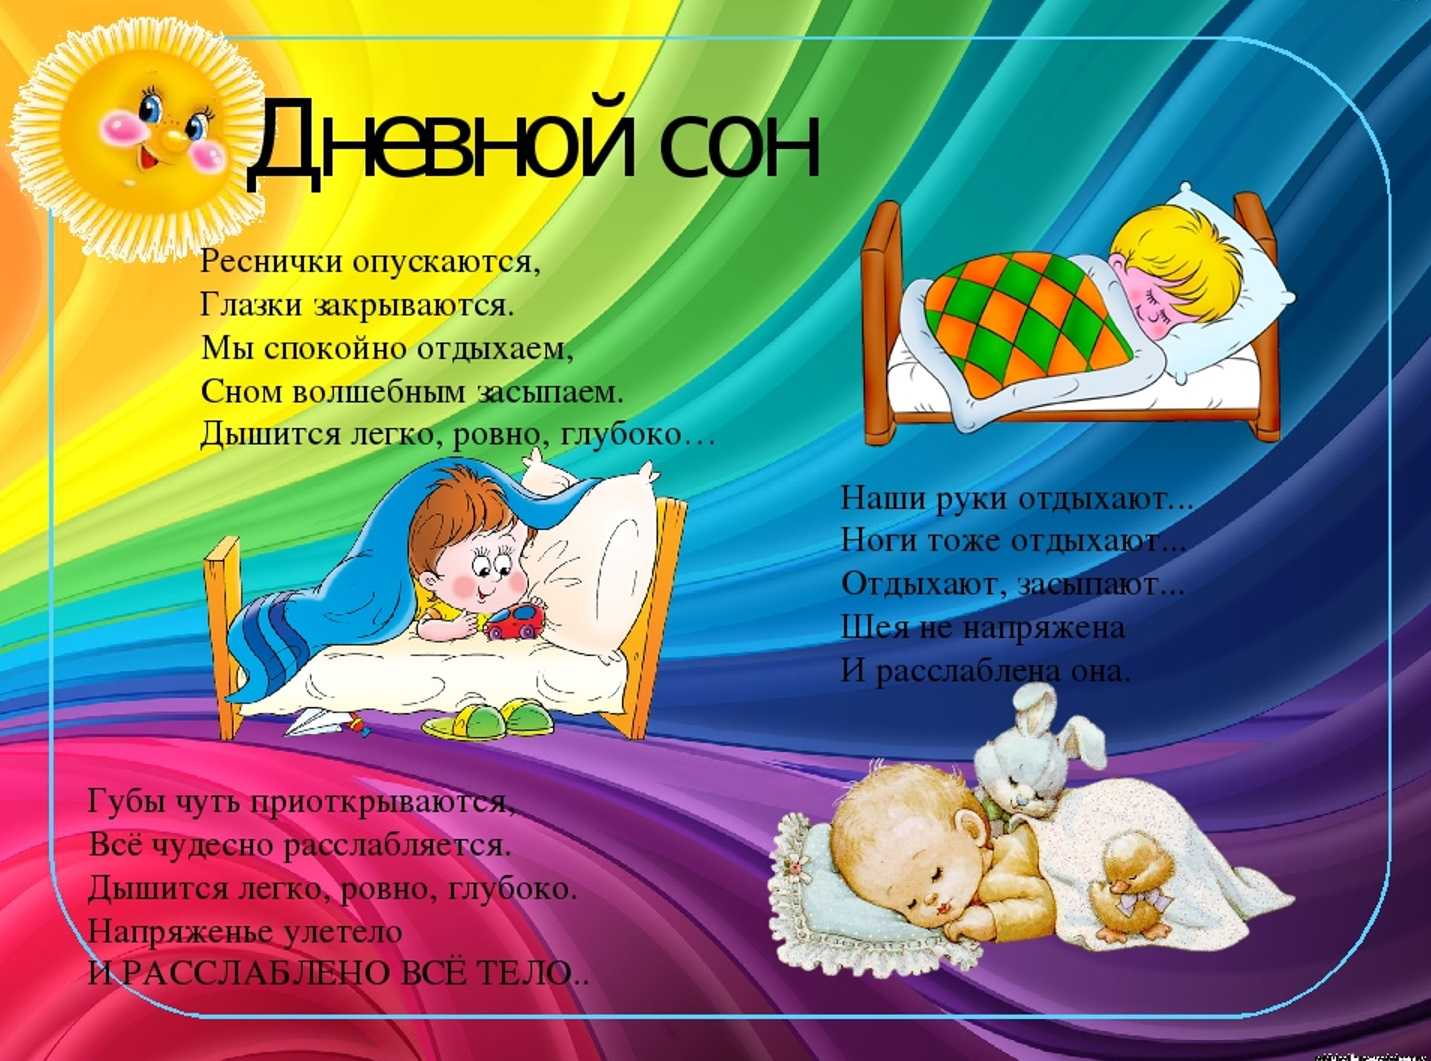 Релаксация перед сном для детей